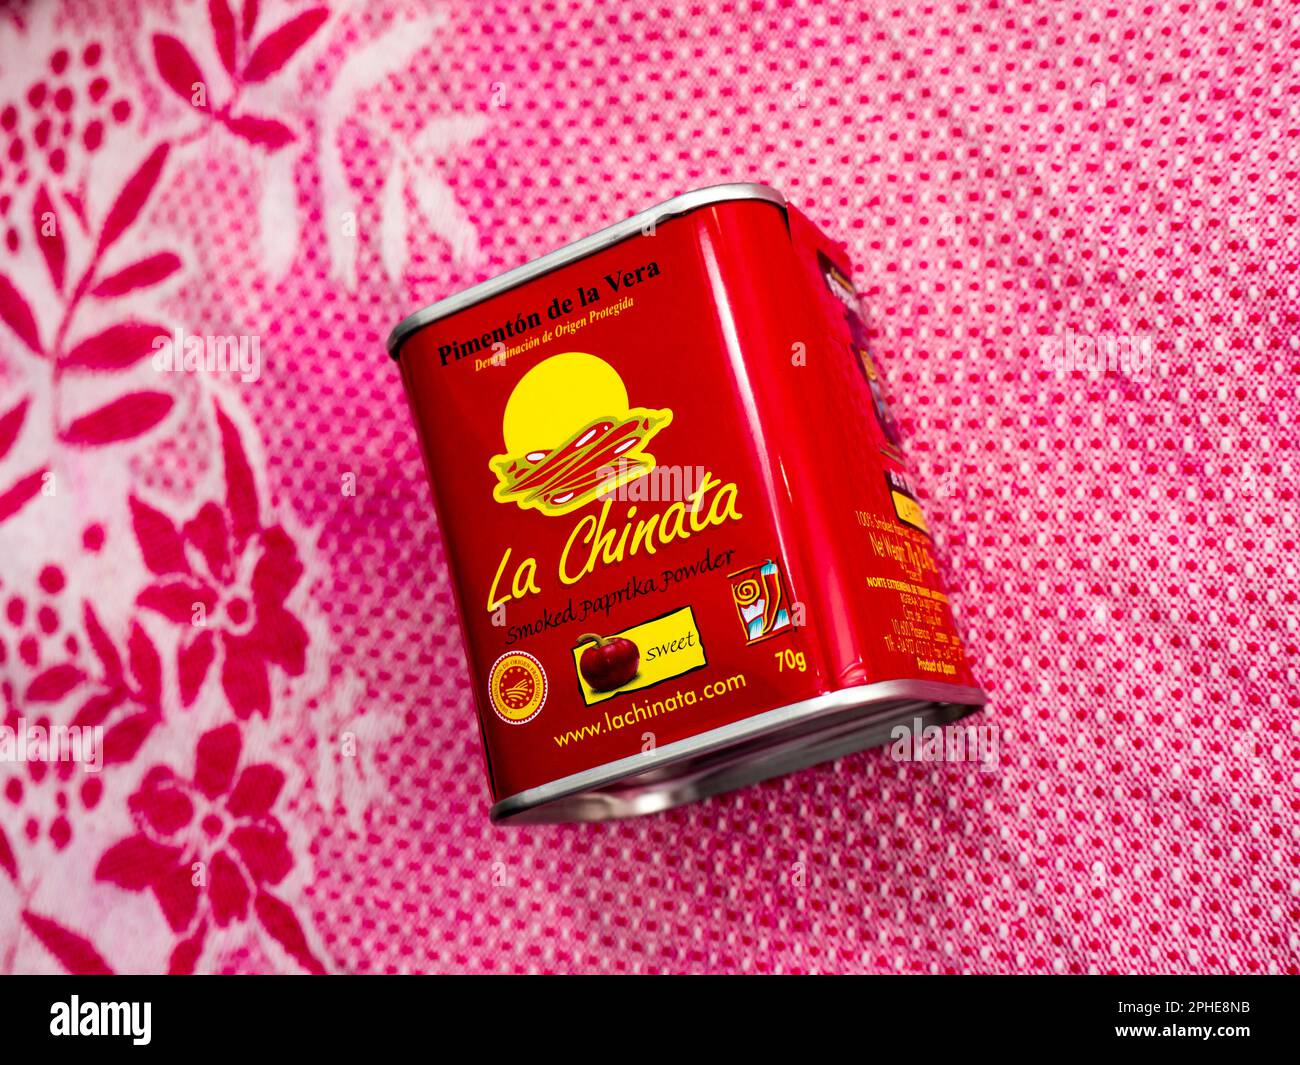 La Chinata 100% Smoked Sweet Paprika Powder. Stock Photo